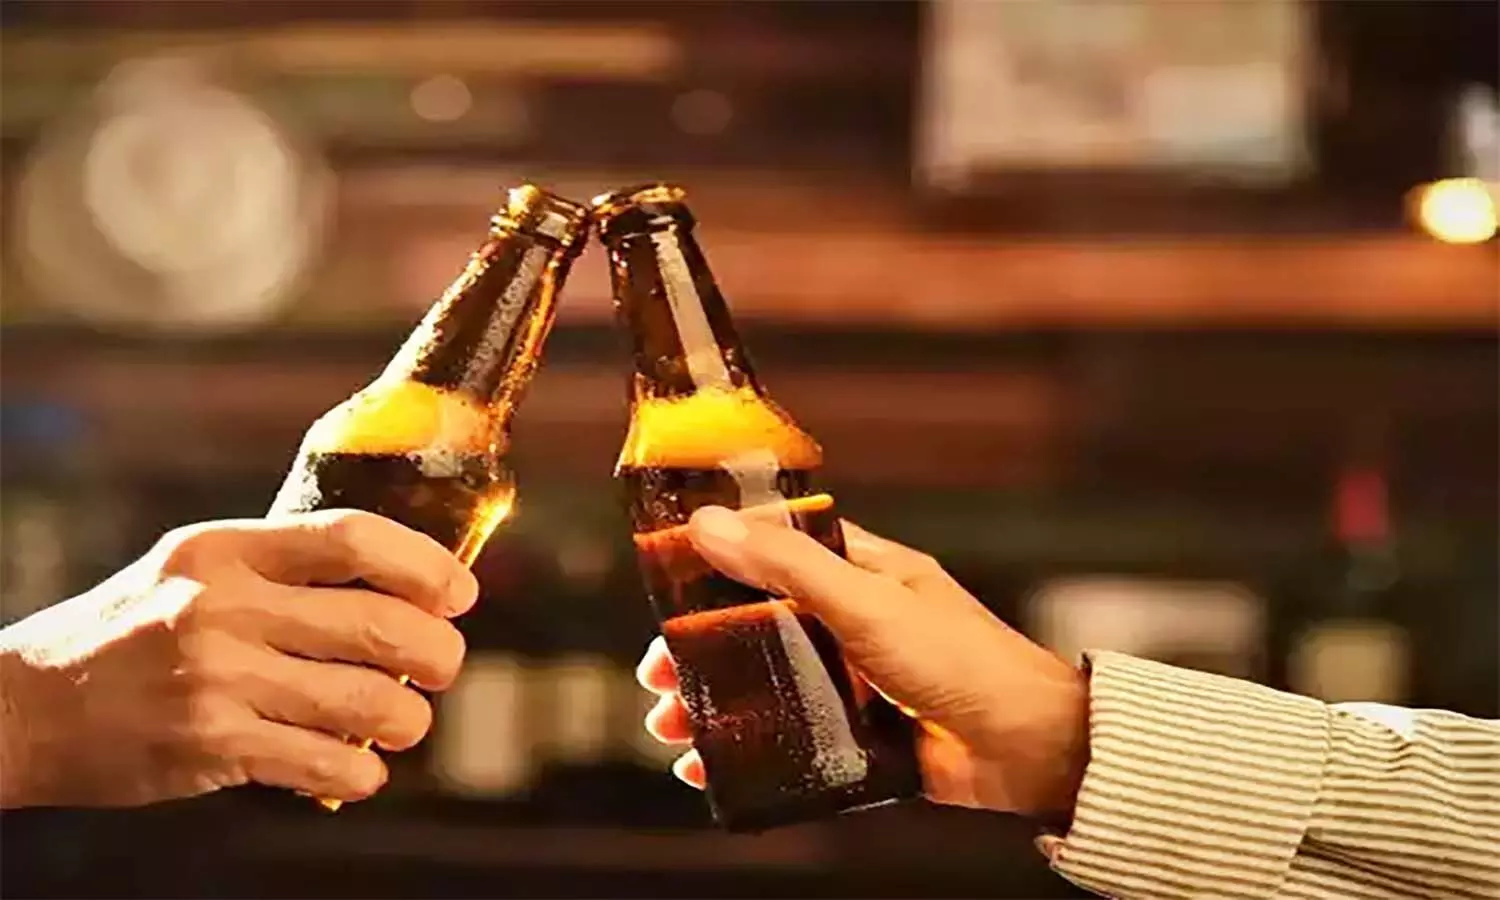 एमपी में शराब से ज्यादा बीयर का क्रेज, गत वर्ष की तुलना में इस साल 50 प्रतिशत ज्यादा हुई खपत